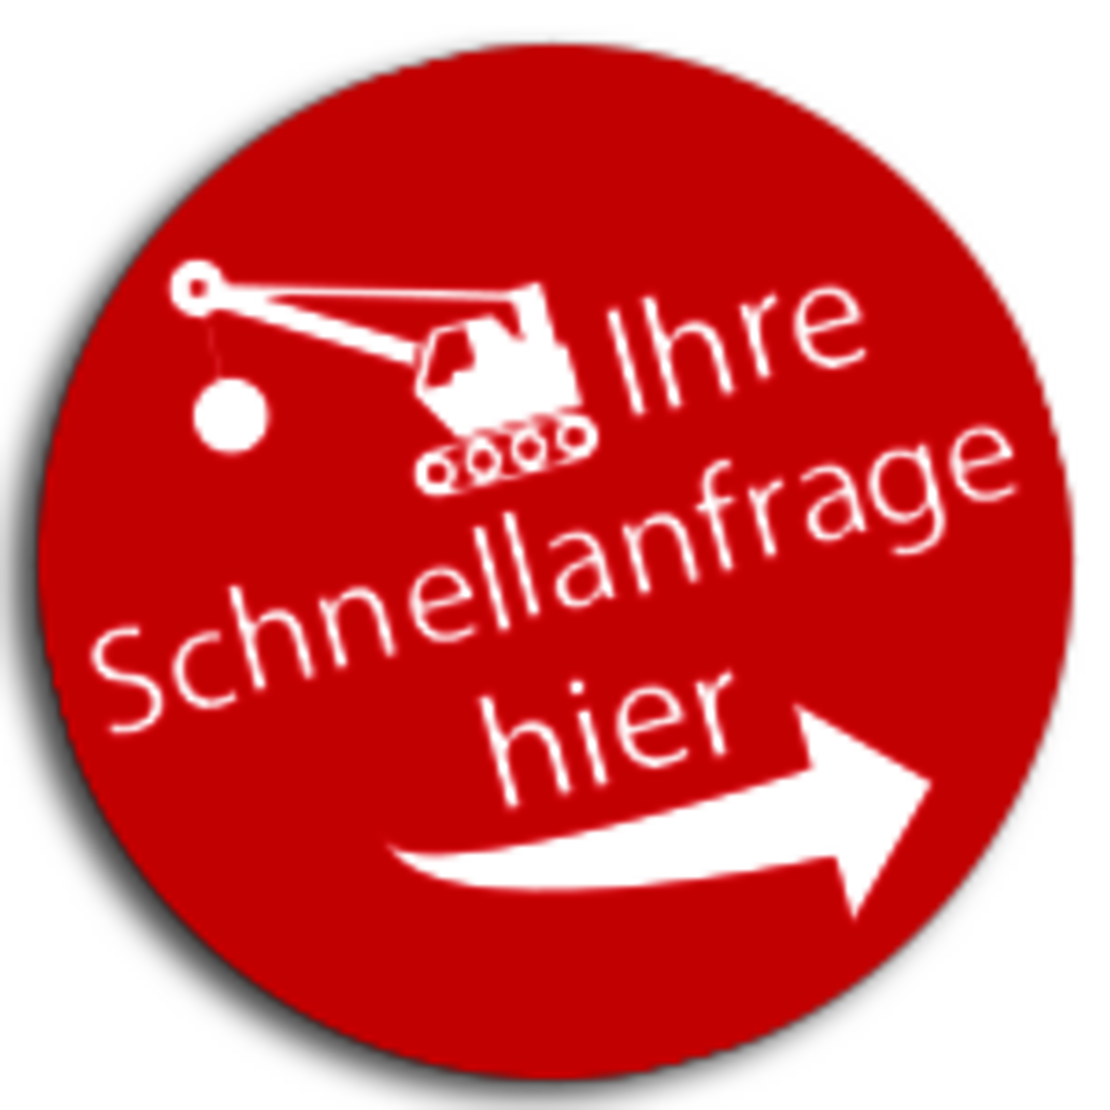 Logo_Schnellanfrage_Abriss